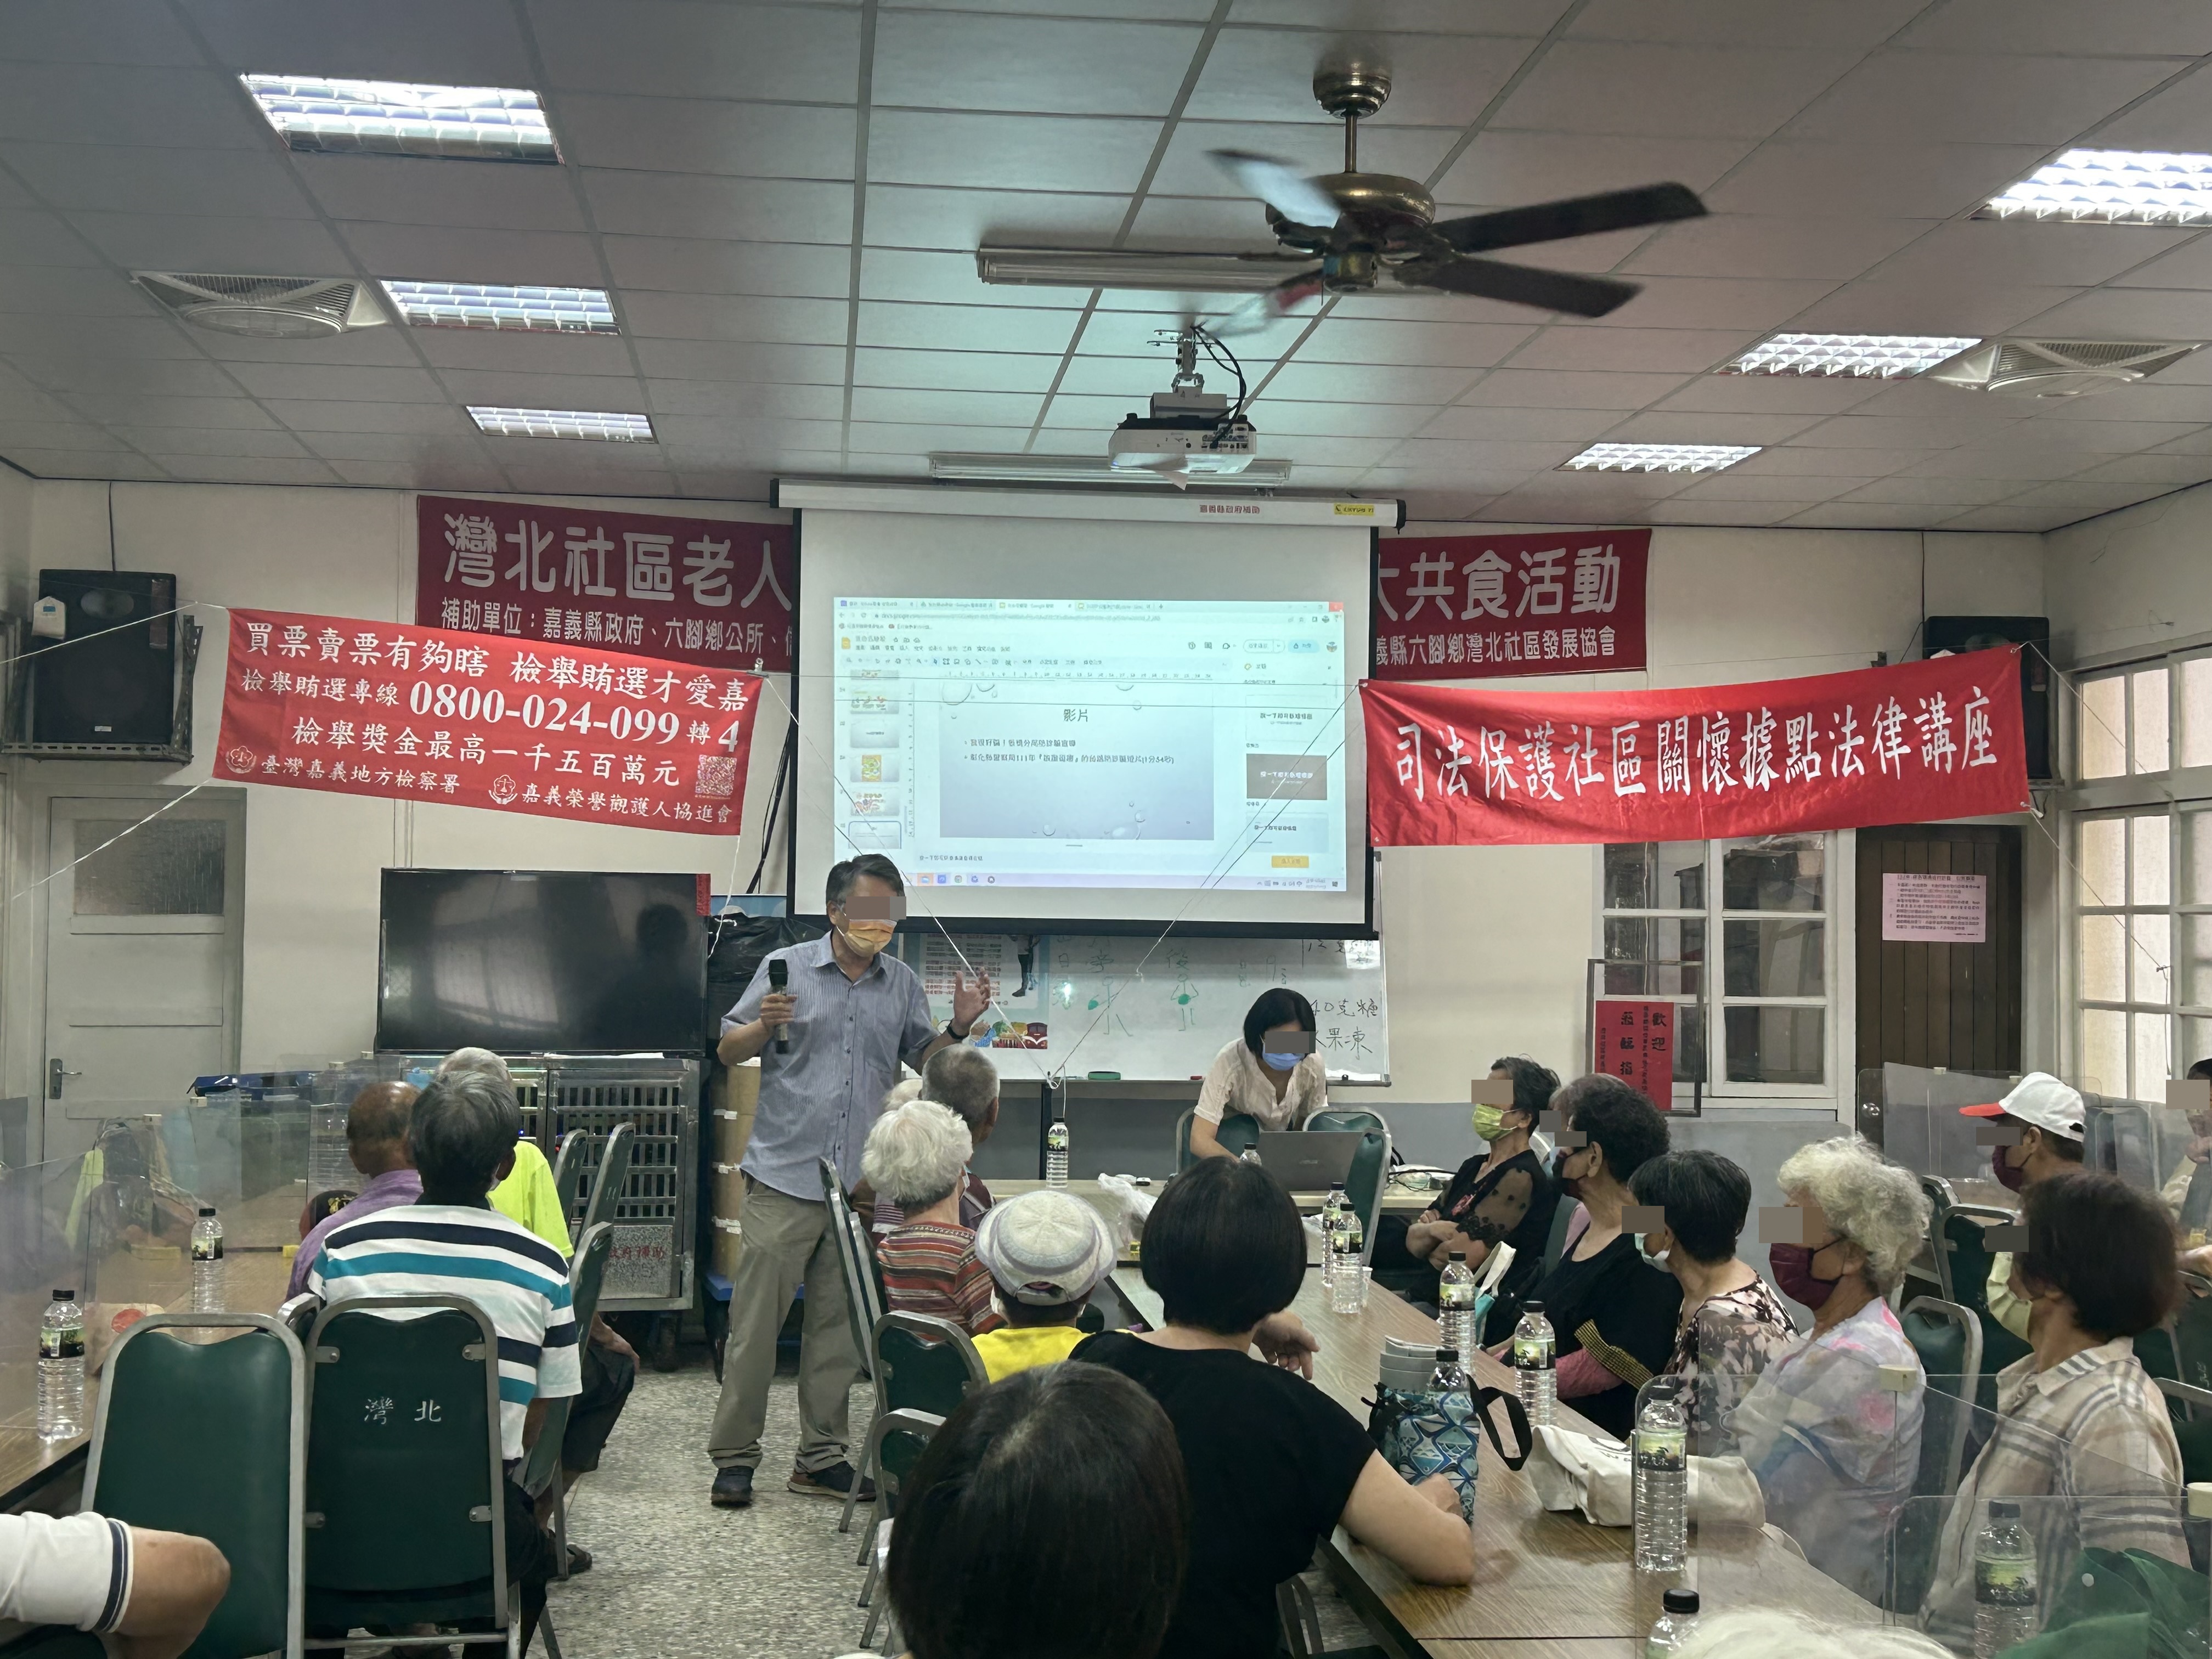 本次活動邀請翁千惠律師擔任「反詐騙專題講座」，針對現行常見的詐騙手法進行解析